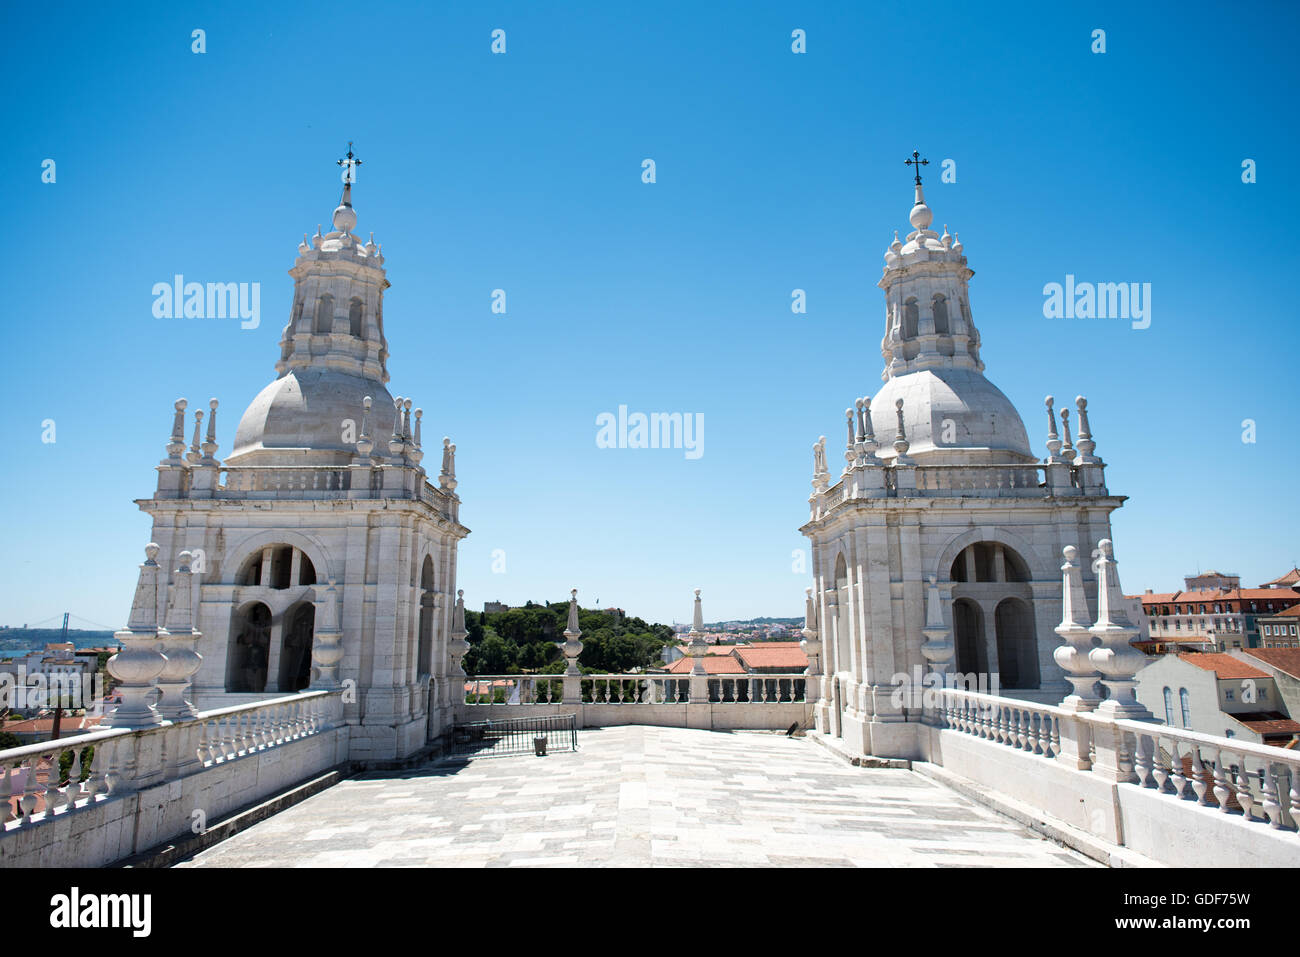 Lisbonne, Portugal - Le monastère de São Vicente de Fora est une église du xviie siècle et un monastère dans le quartier Alfama de Lisbonne. Il dispose de sections richement décoré dans le style baroque ainsi que le panthéon Braganza, où les rois qui ont régné au Portugal entre 1640 et 1910 sont inhumés. Banque D'Images